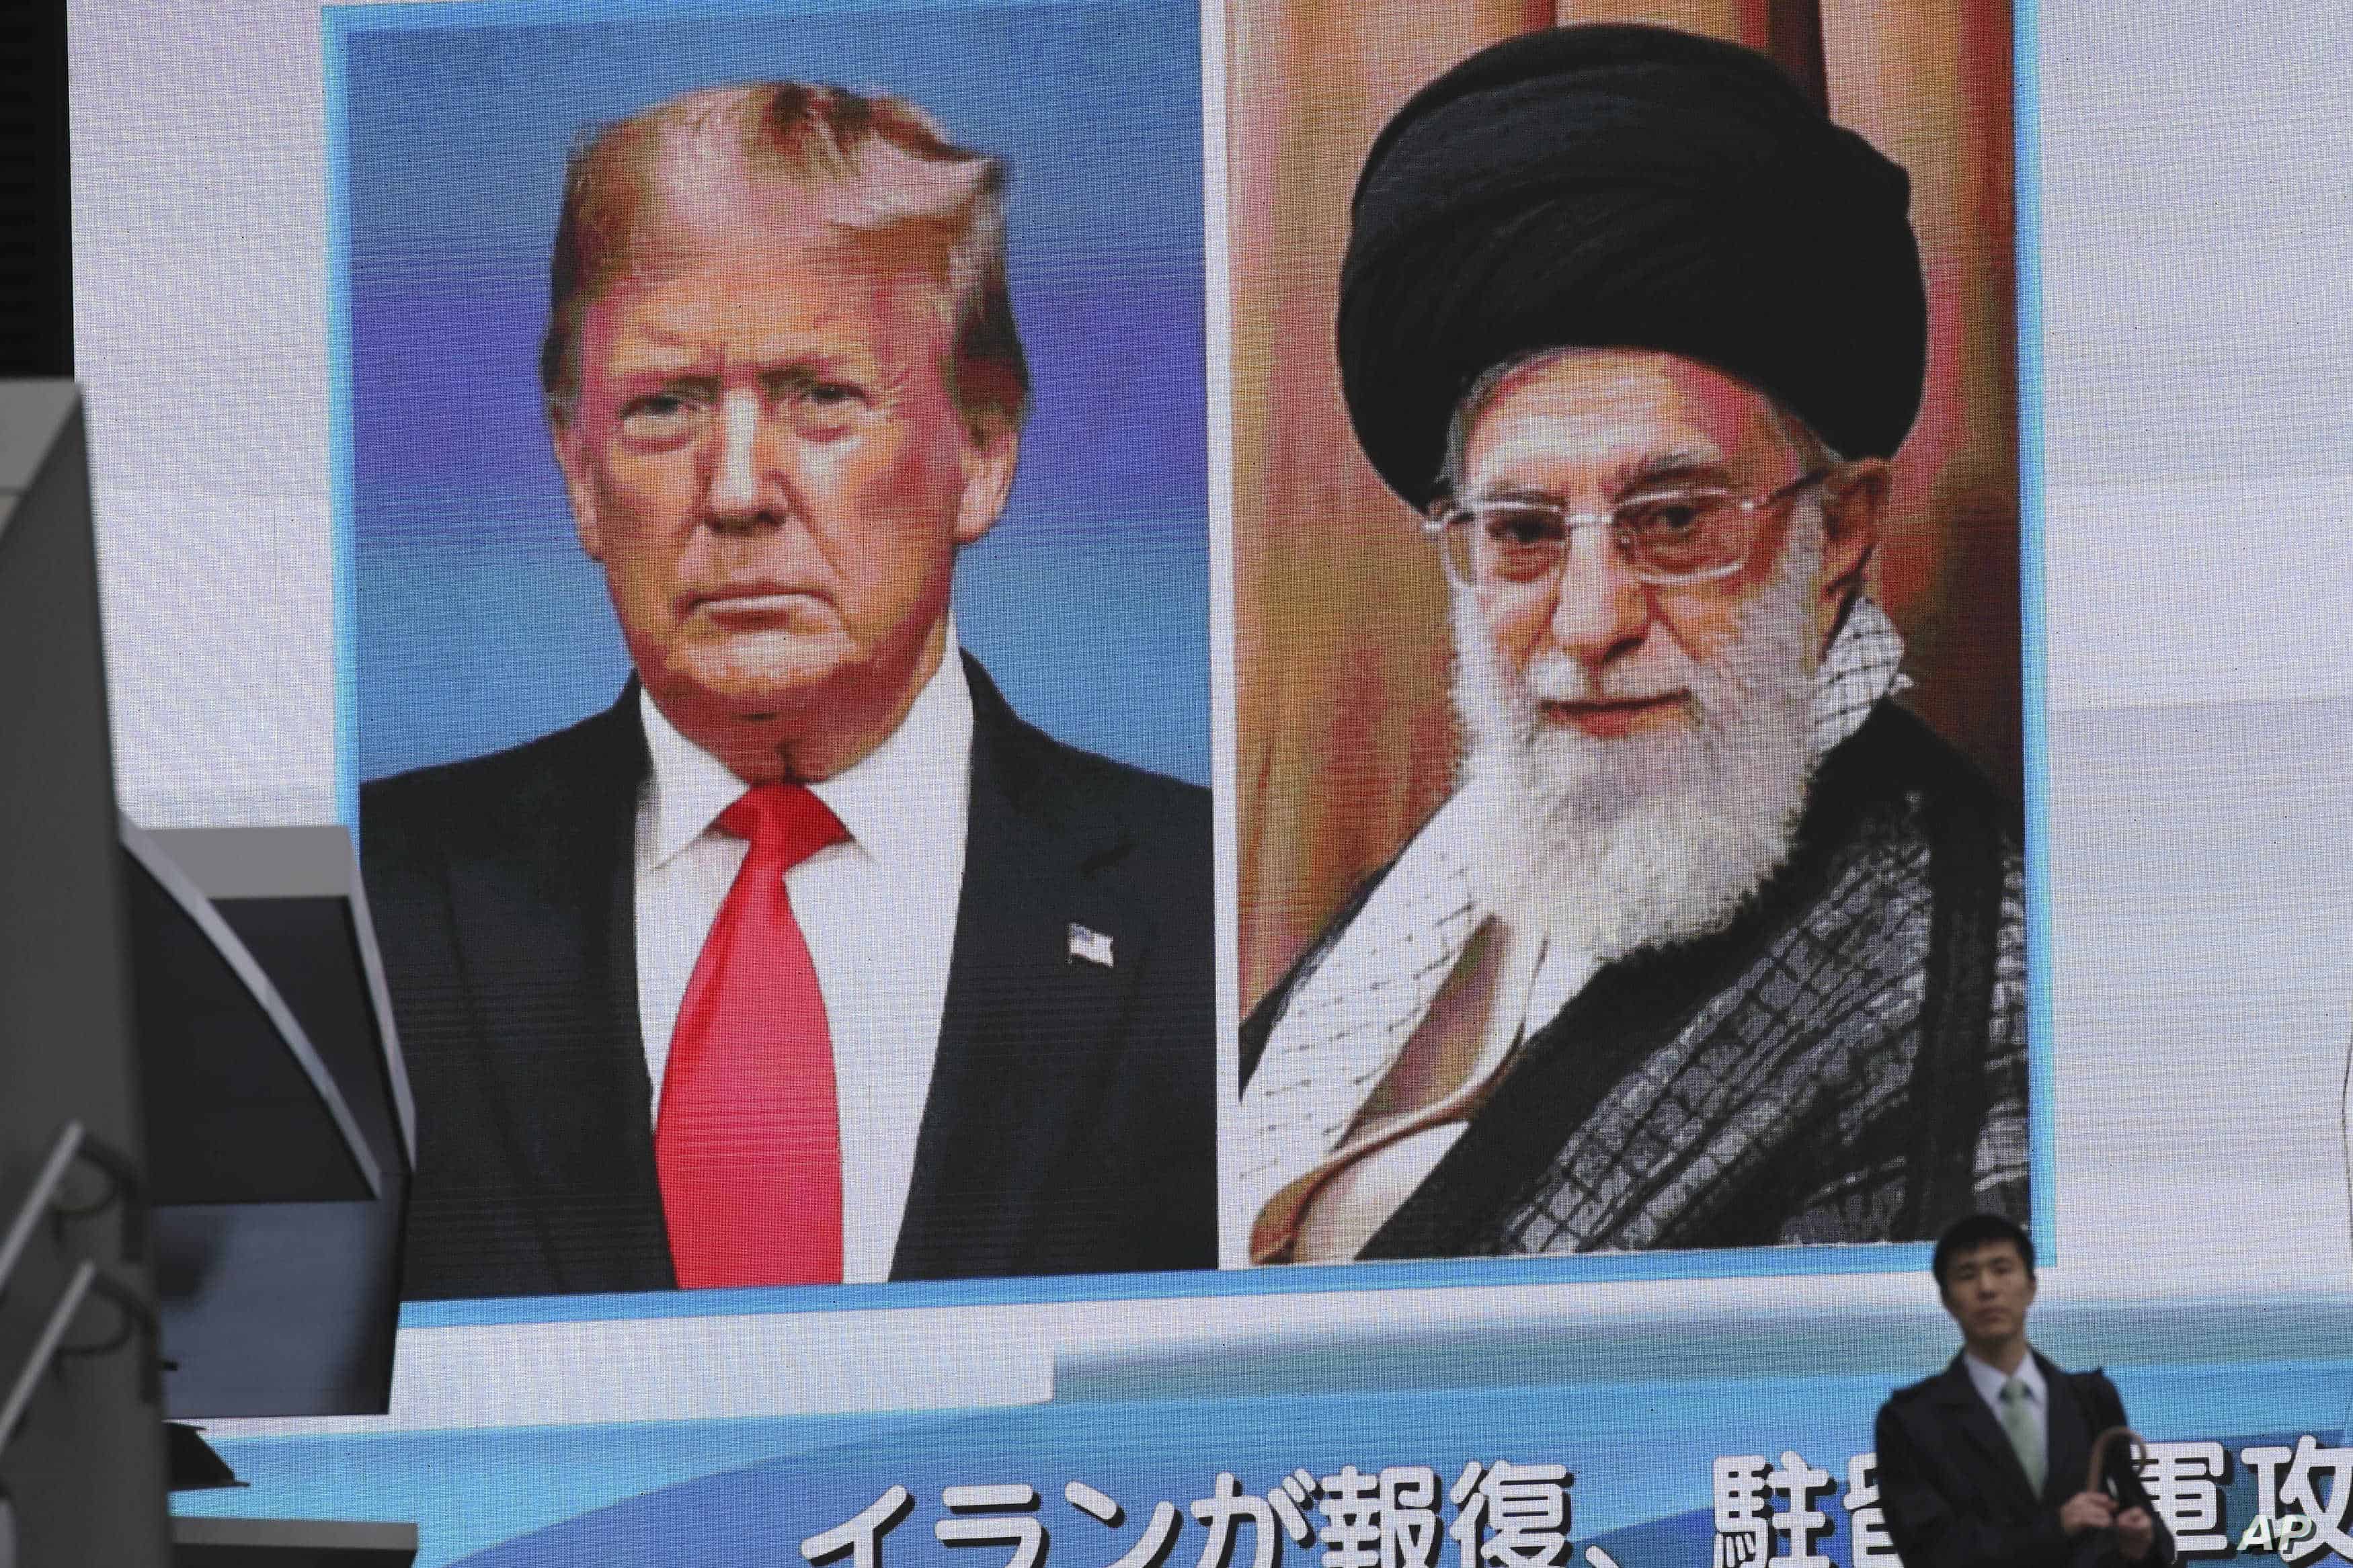 Konflikt Iran - USA Donald Trump postanowił zaprezentować swoje stanowisko w "Fox News" i "ujawnić" prawdziwy powód ataku.